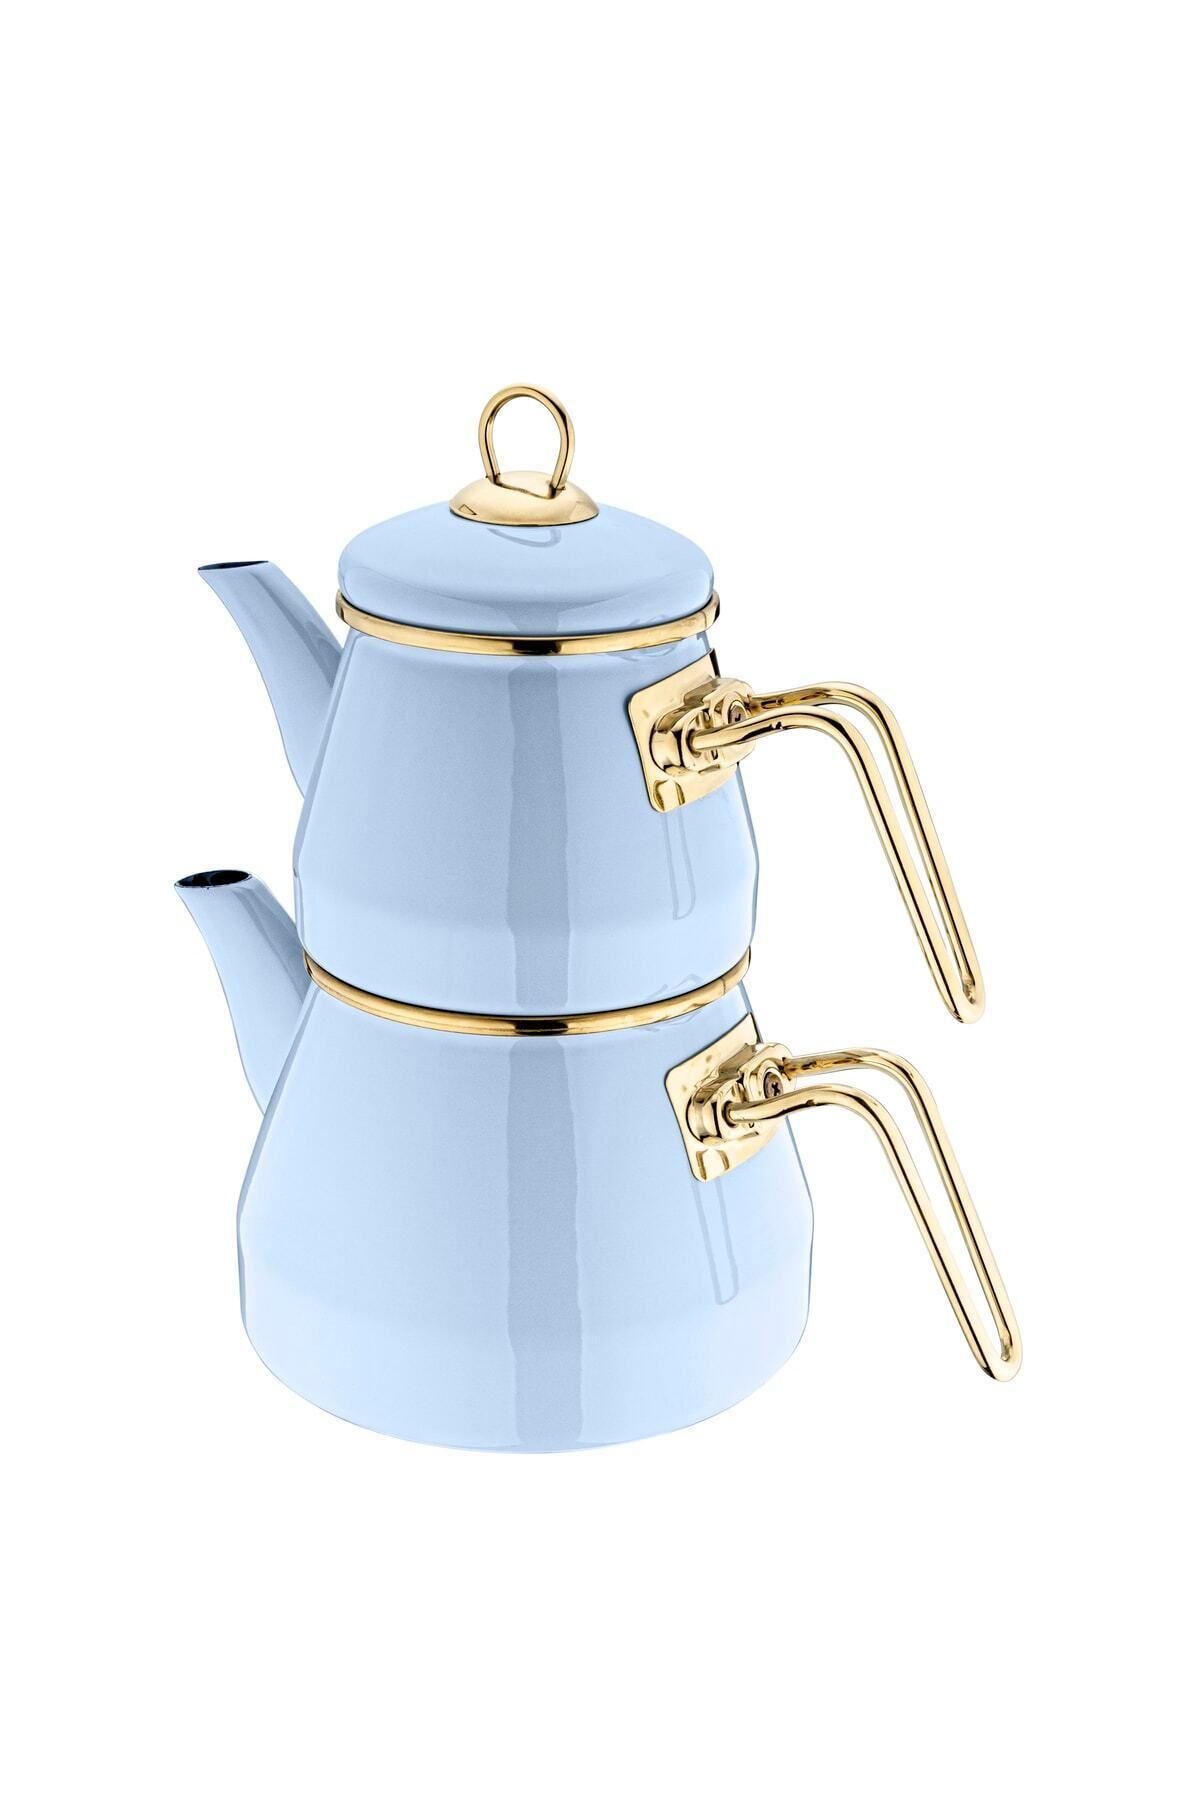 Taşev Qussine Robin Çaydanlık Takımı Mavi